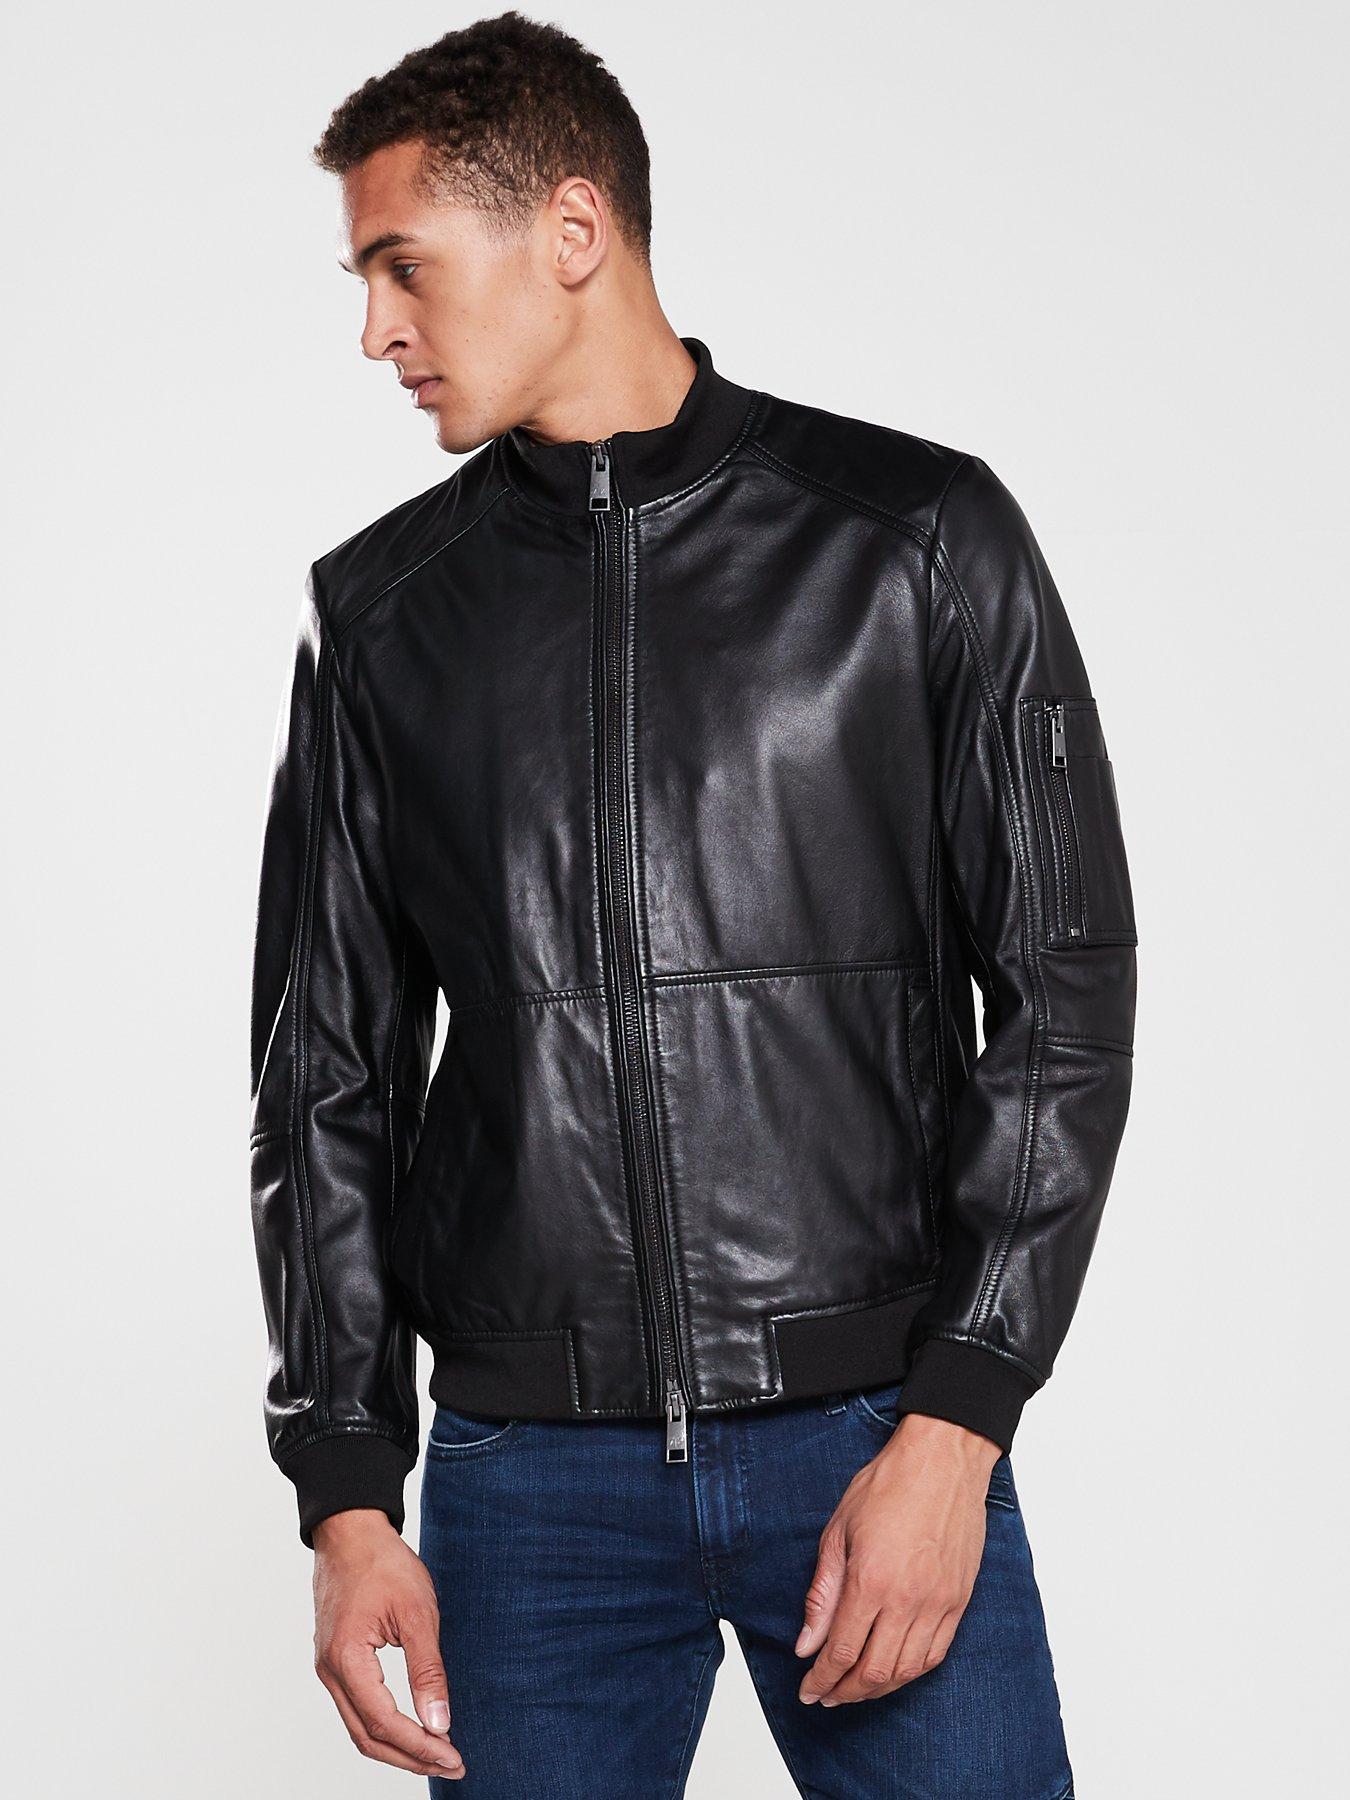 armani exchange jacket leather